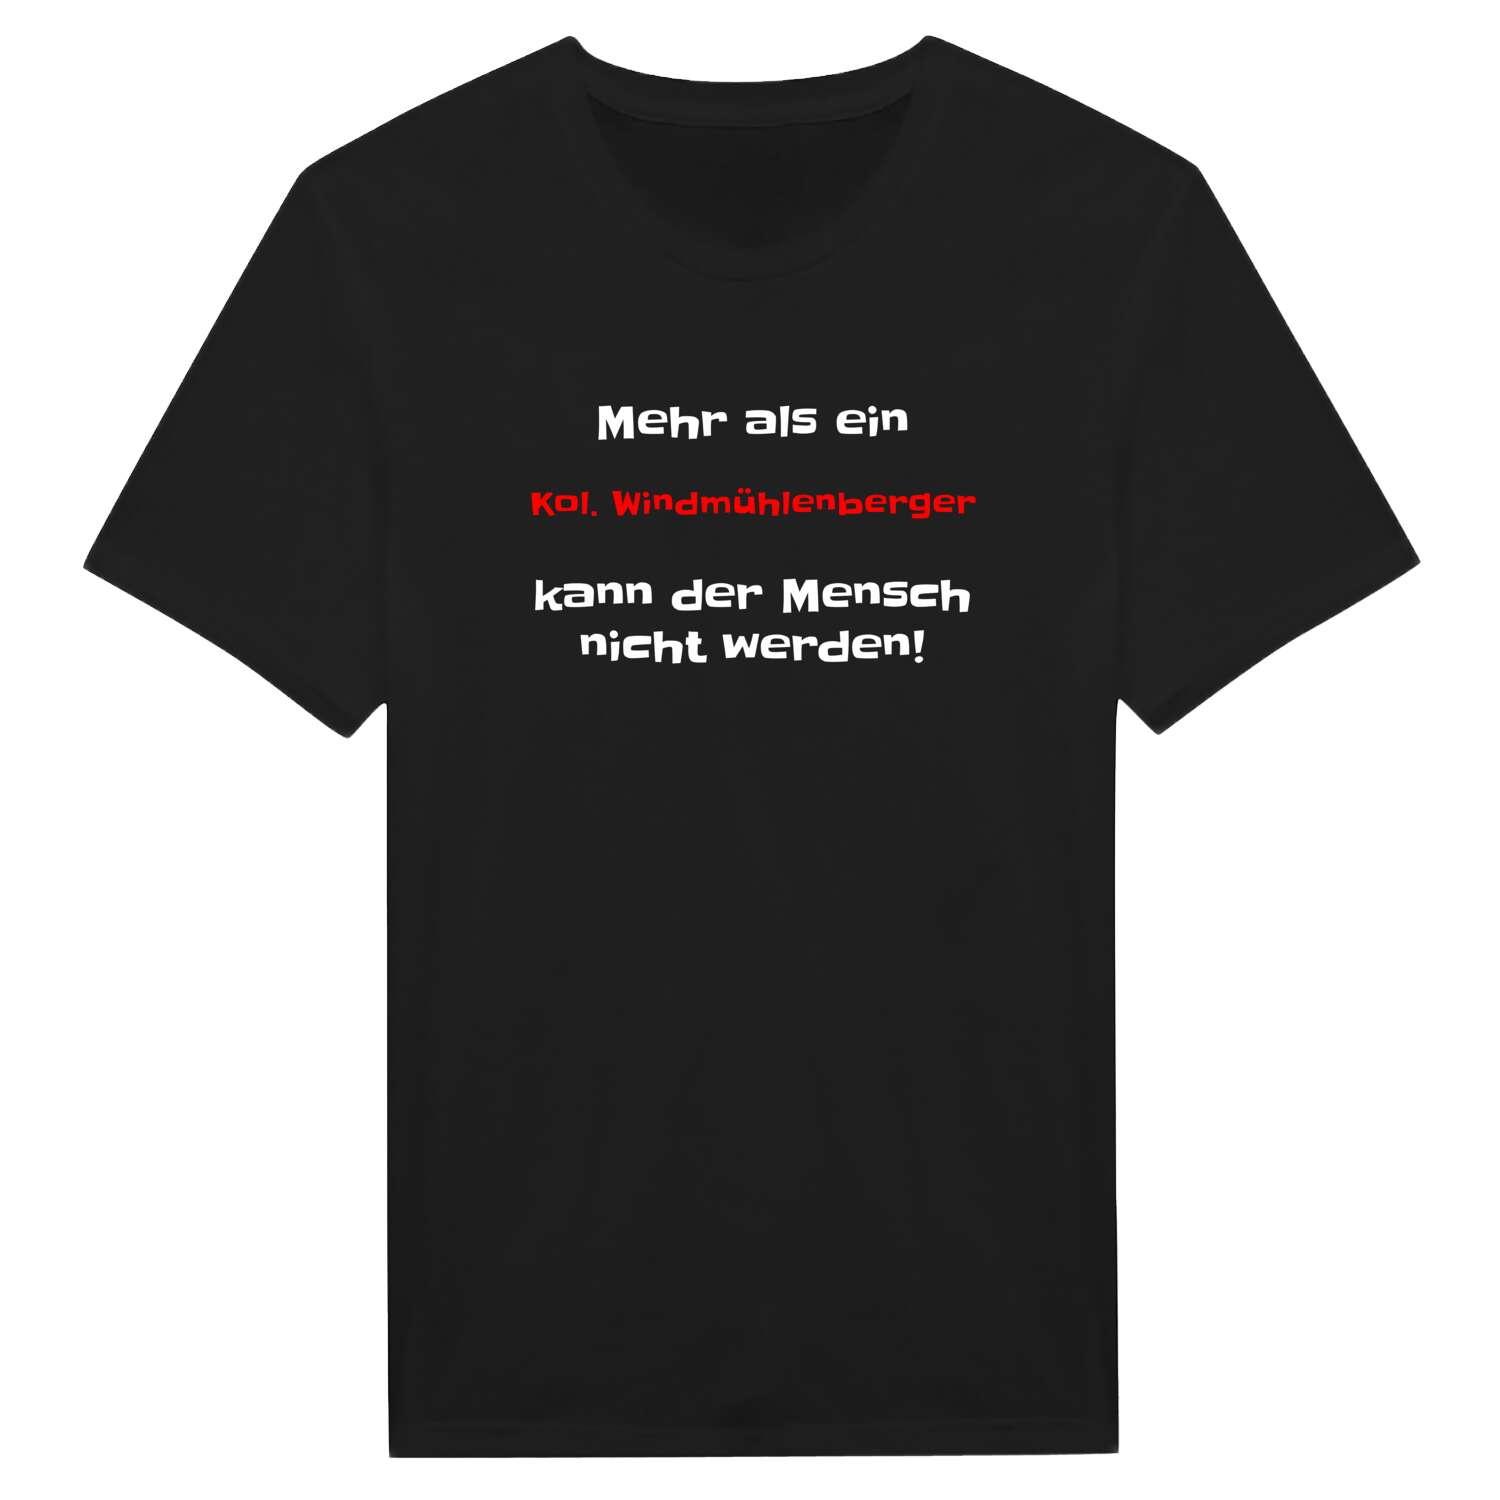 Kol. Windmühlenberg T-Shirt »Mehr als ein«